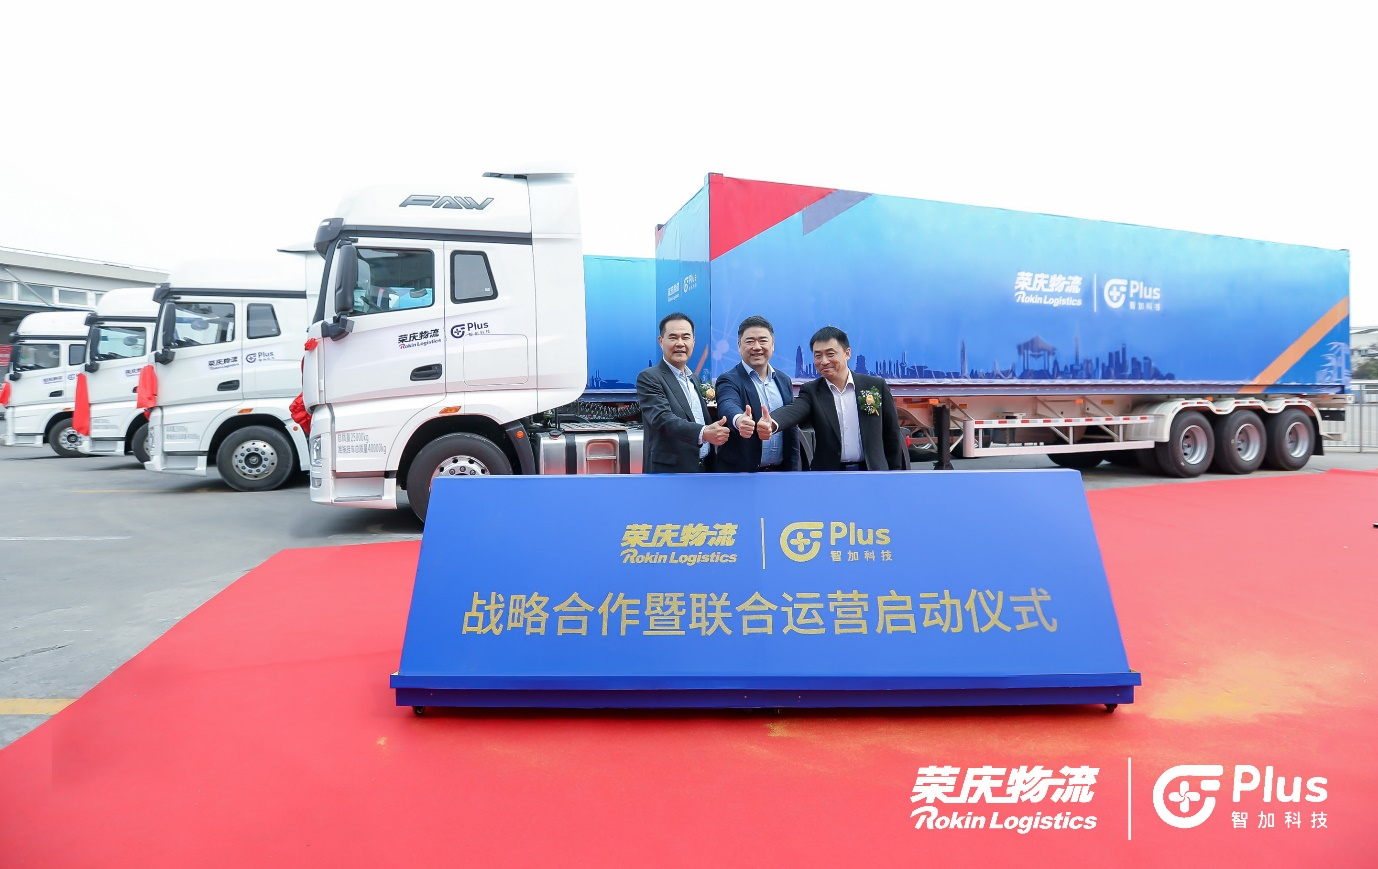 荣庆物流与智加科技达成战略合作并启动联合运营，开通中国首条量产智能重卡运营专线